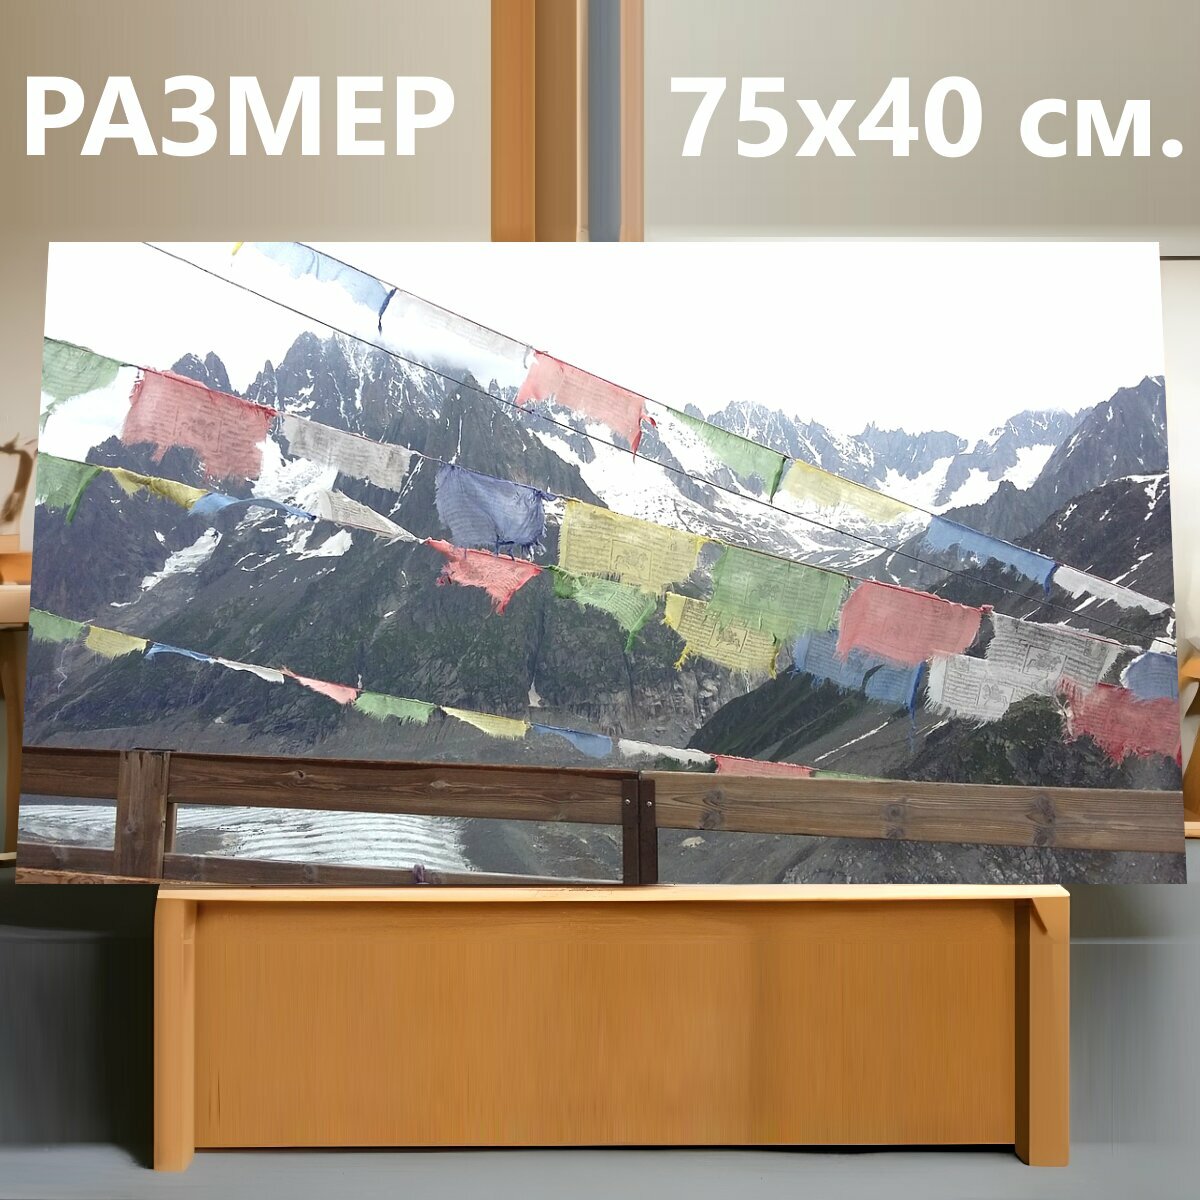 Картина на холсте "Гора, пейзаж, горный пейзаж" на подрамнике 75х40 см. для интерьера